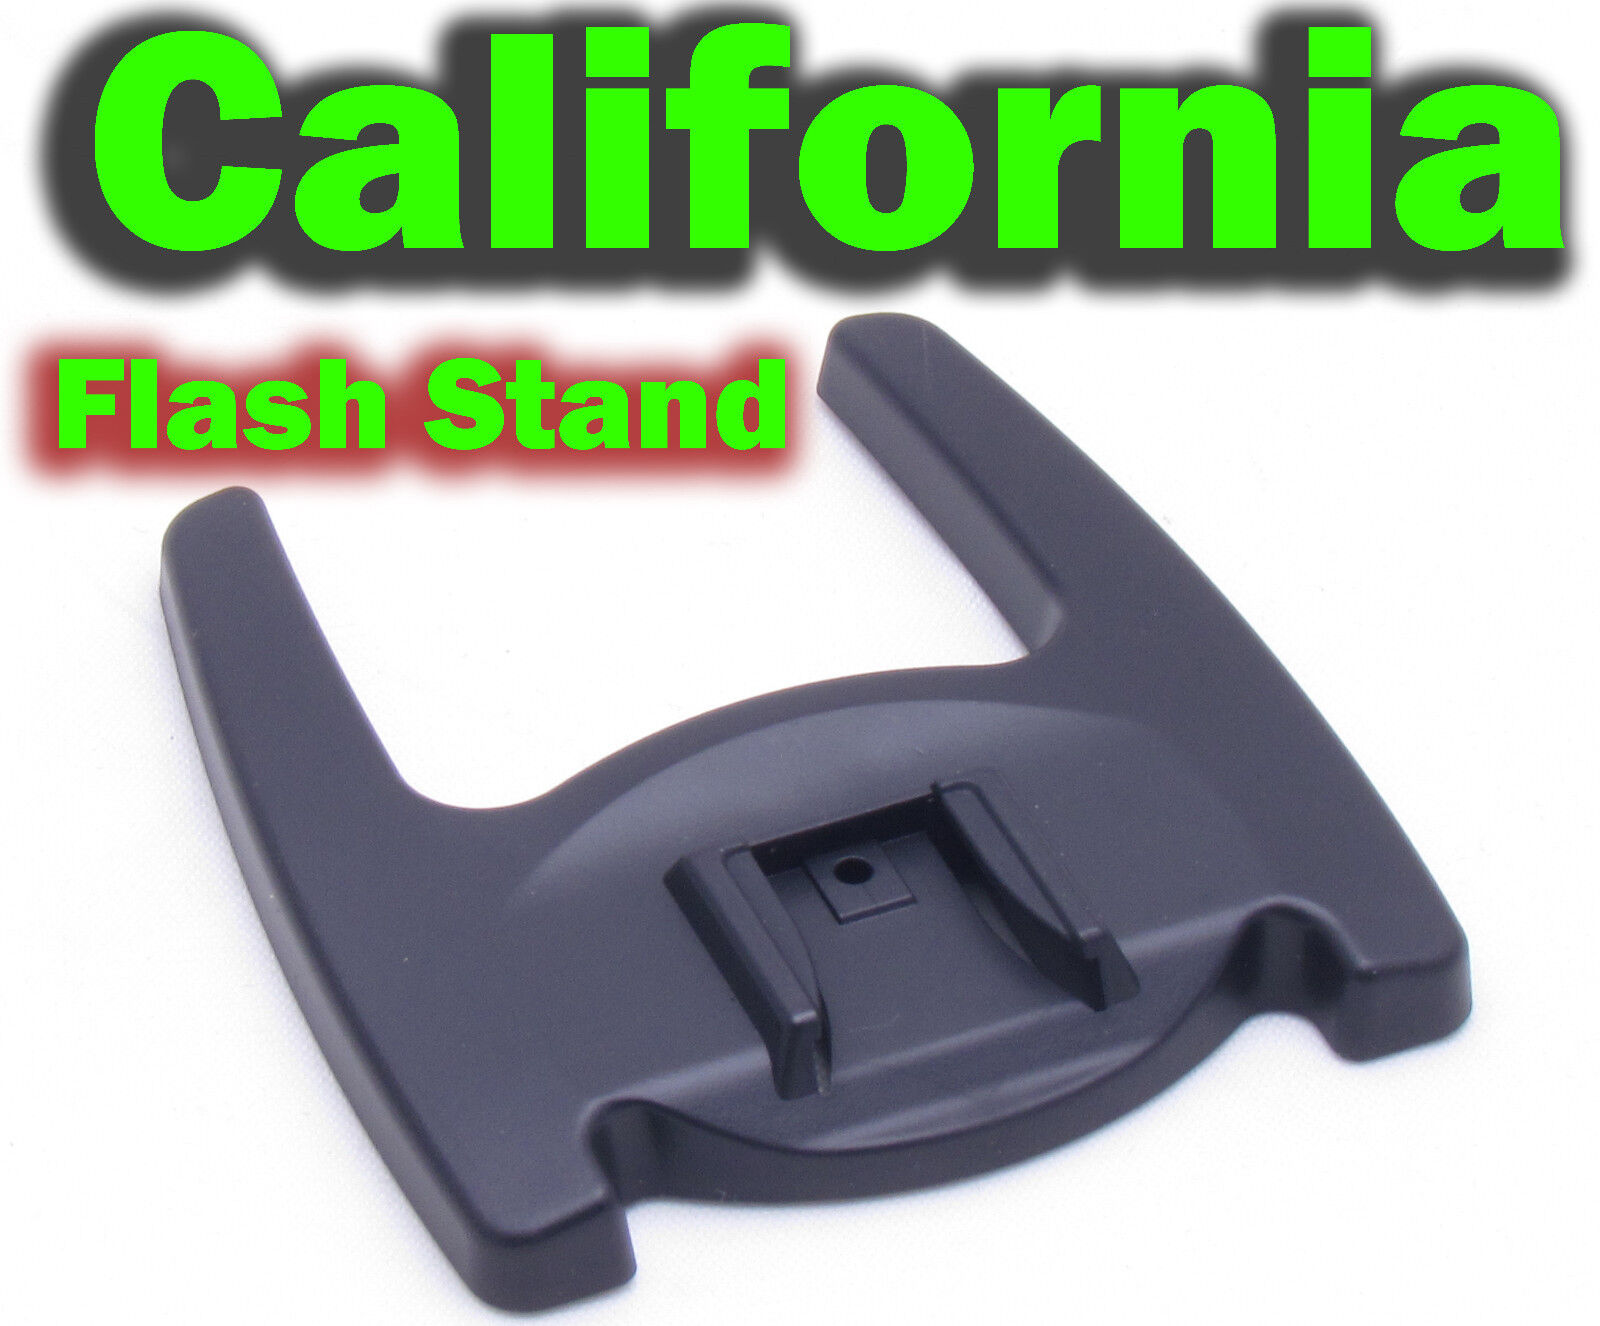 10 Flash Stand Holder Mount Bracket Cold Hot Shoe Speedlite Flashgun 1/4" Screw  Paxly Does Not Apply - фотография #2